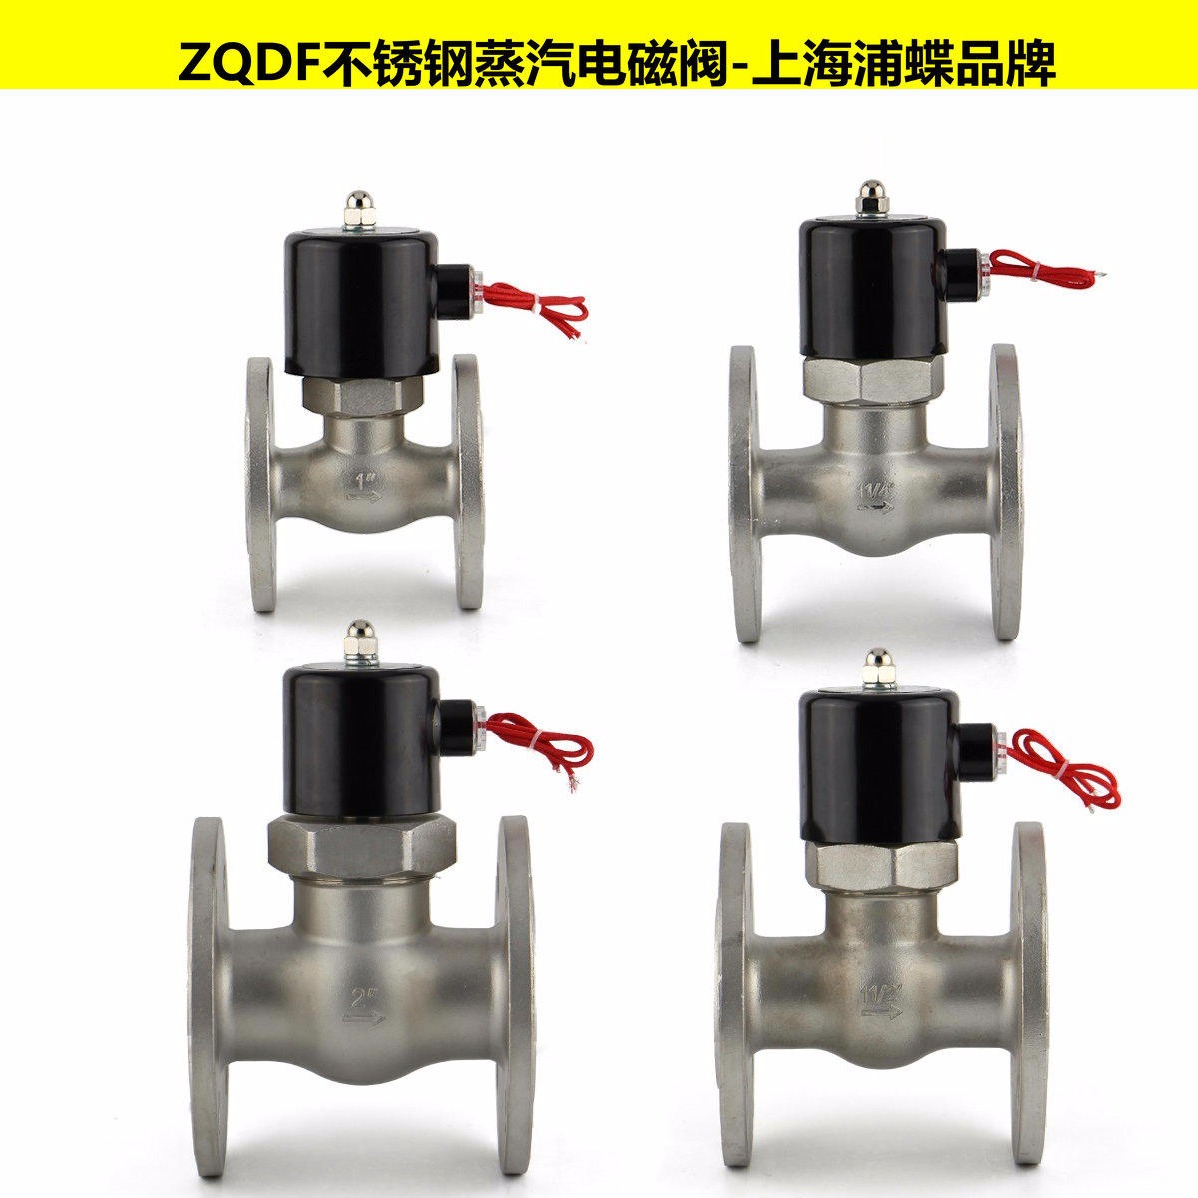 ZQDF不锈钢蒸汽电磁阀 上海浦蝶品牌